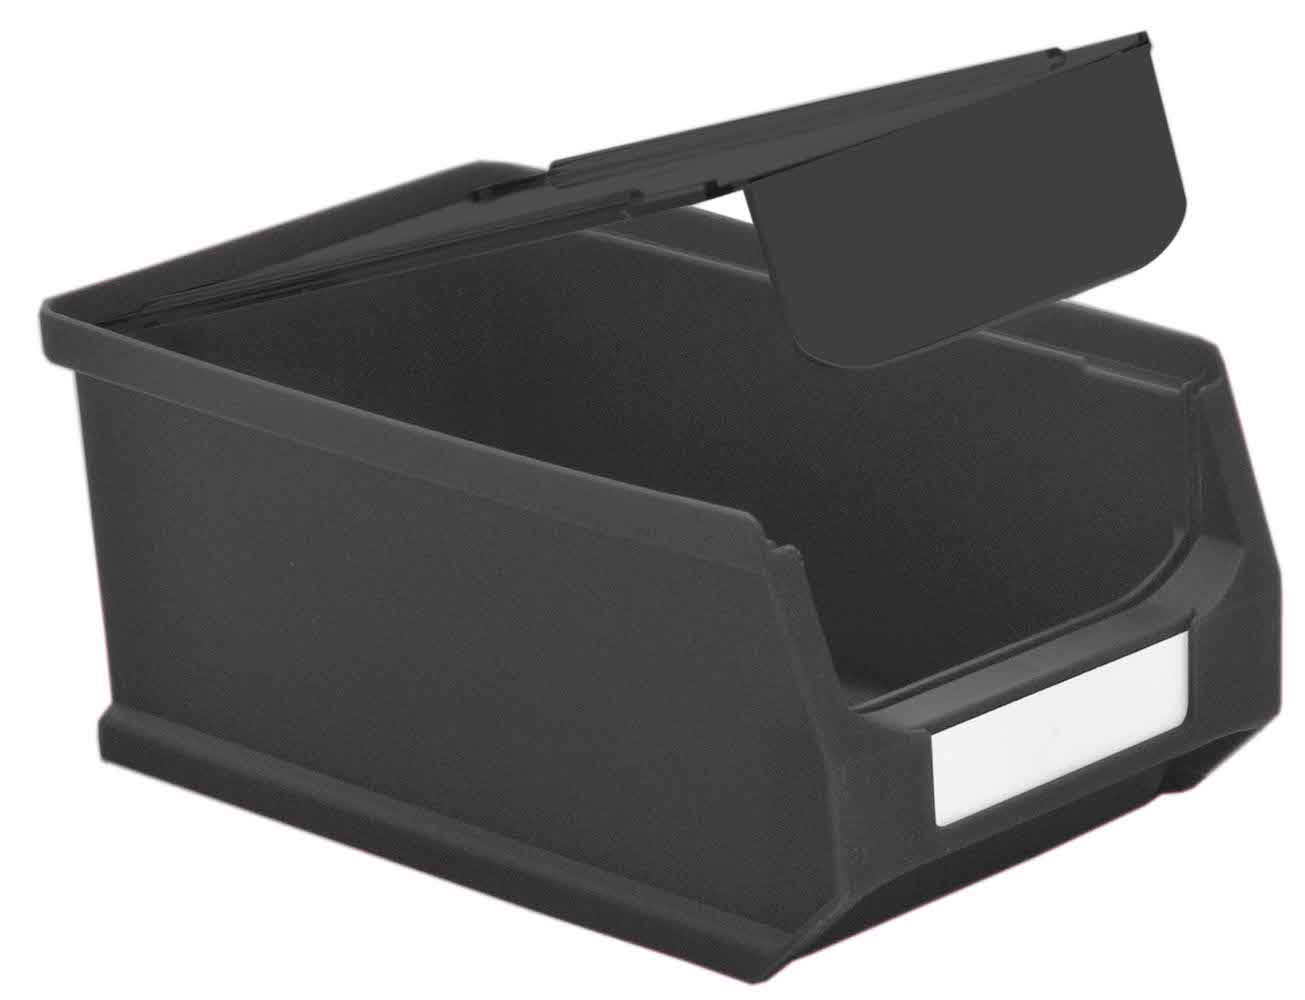 Staubdeckel 10x leitfähige Abdeckung für Sichtlagerbox 2.0 | HxBxT 0,2x9,5x15,8cm | ESD, Schmutzdeckel, Schutzdeckel, Sichtlagerbehälter, Sitchlagerkasten